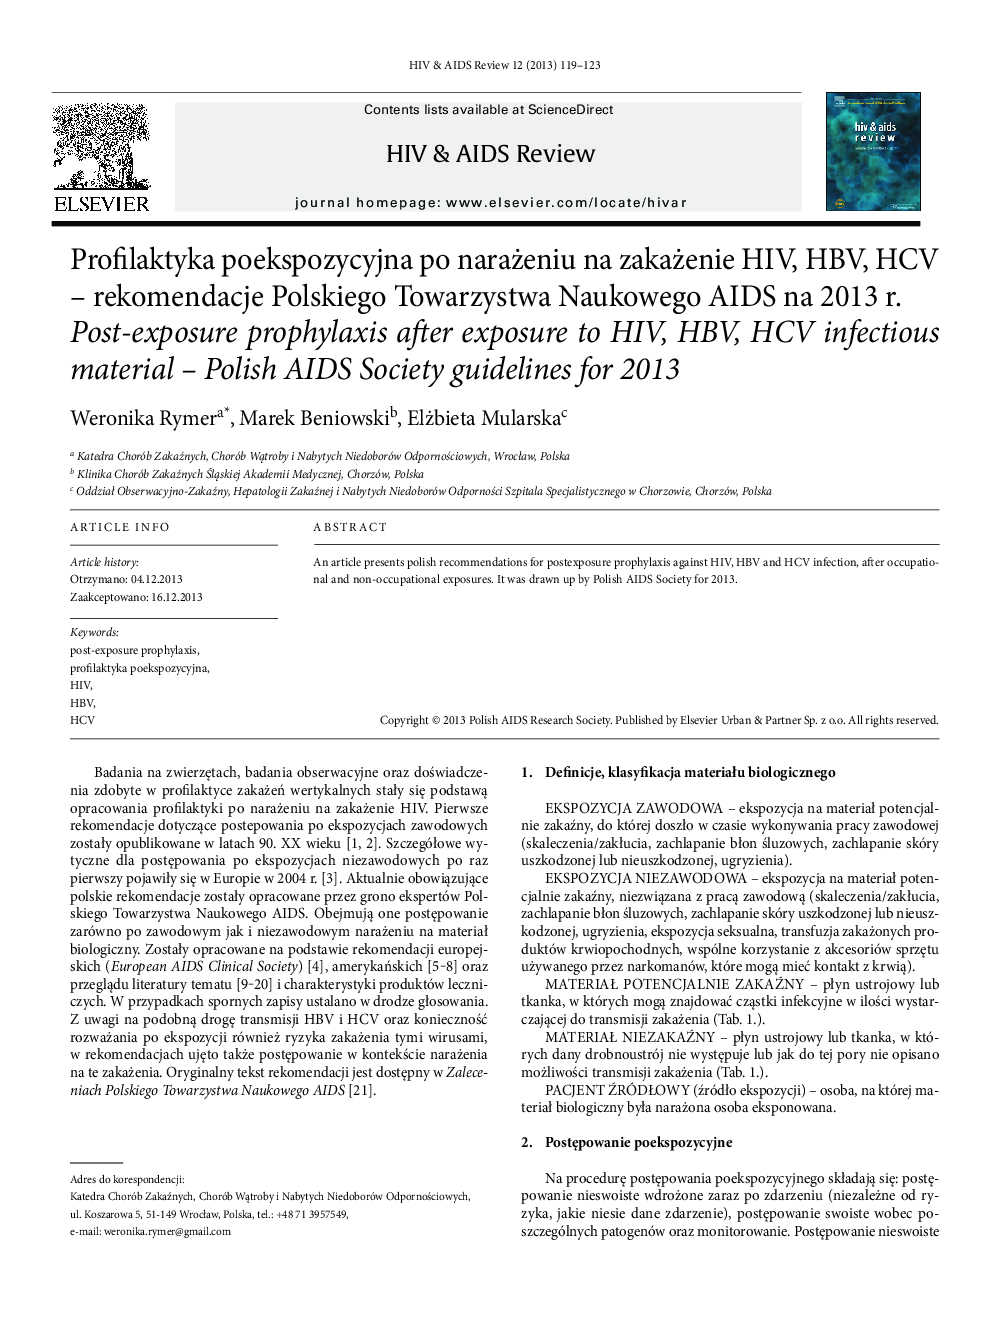 Profilaktyka poekspozycyjna po narażeniu na zakażenie HIV, HBV, HCV – rekomendacje Polskiego Towarzystwa Naukowego AIDS na 2013 r